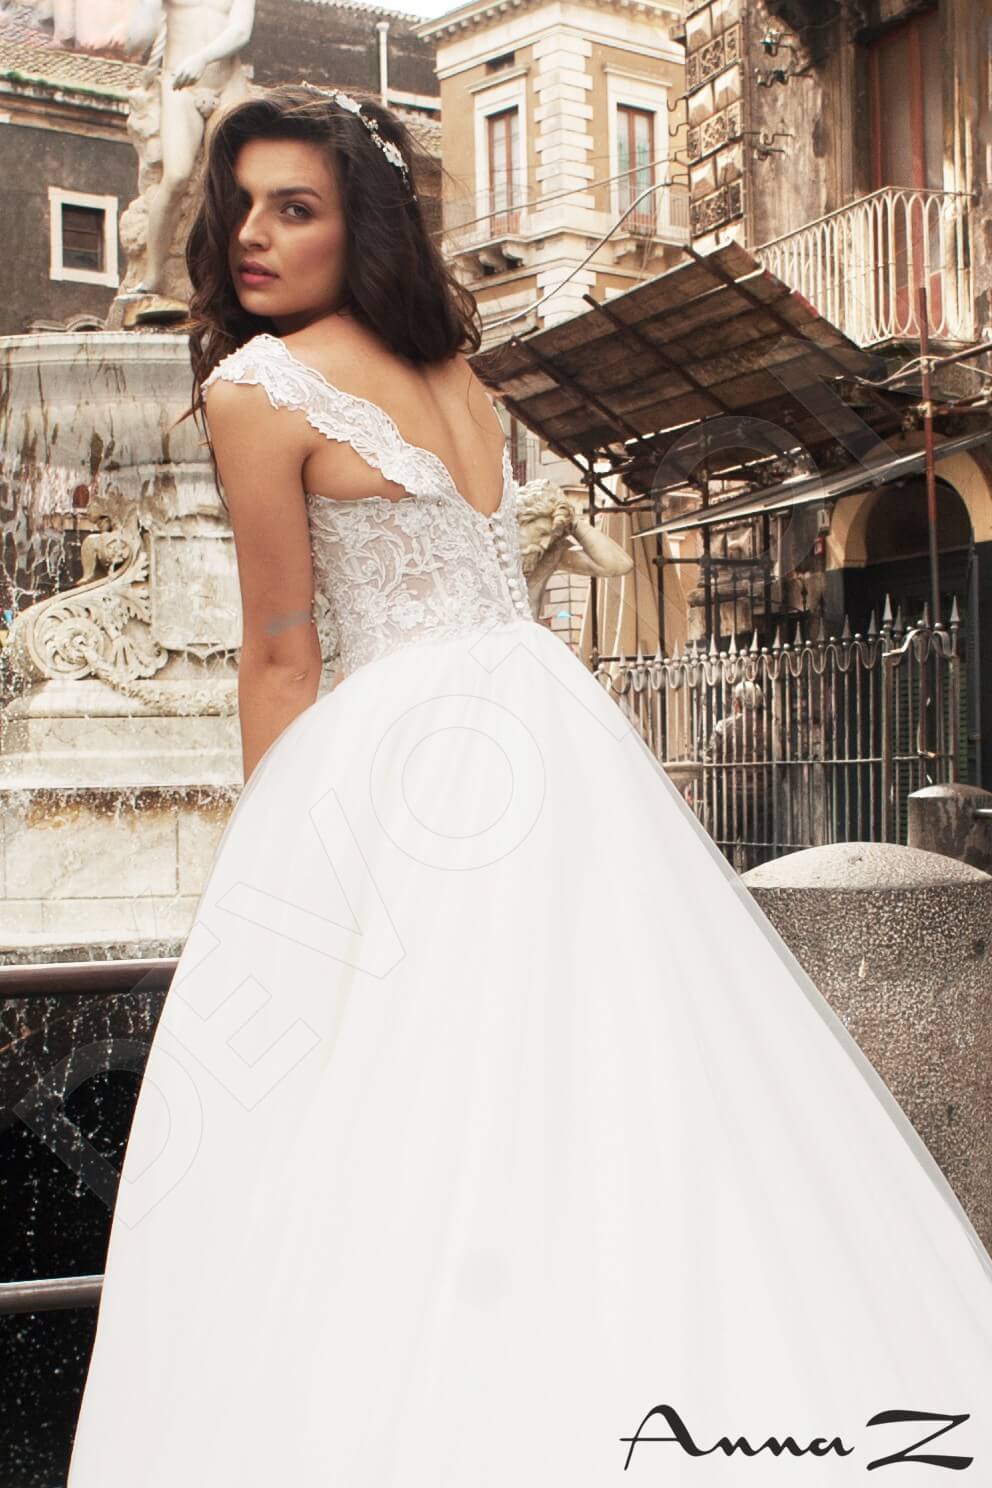 Orinne Open back Princess/Ball Gown Sleeveless Wedding Dress 8